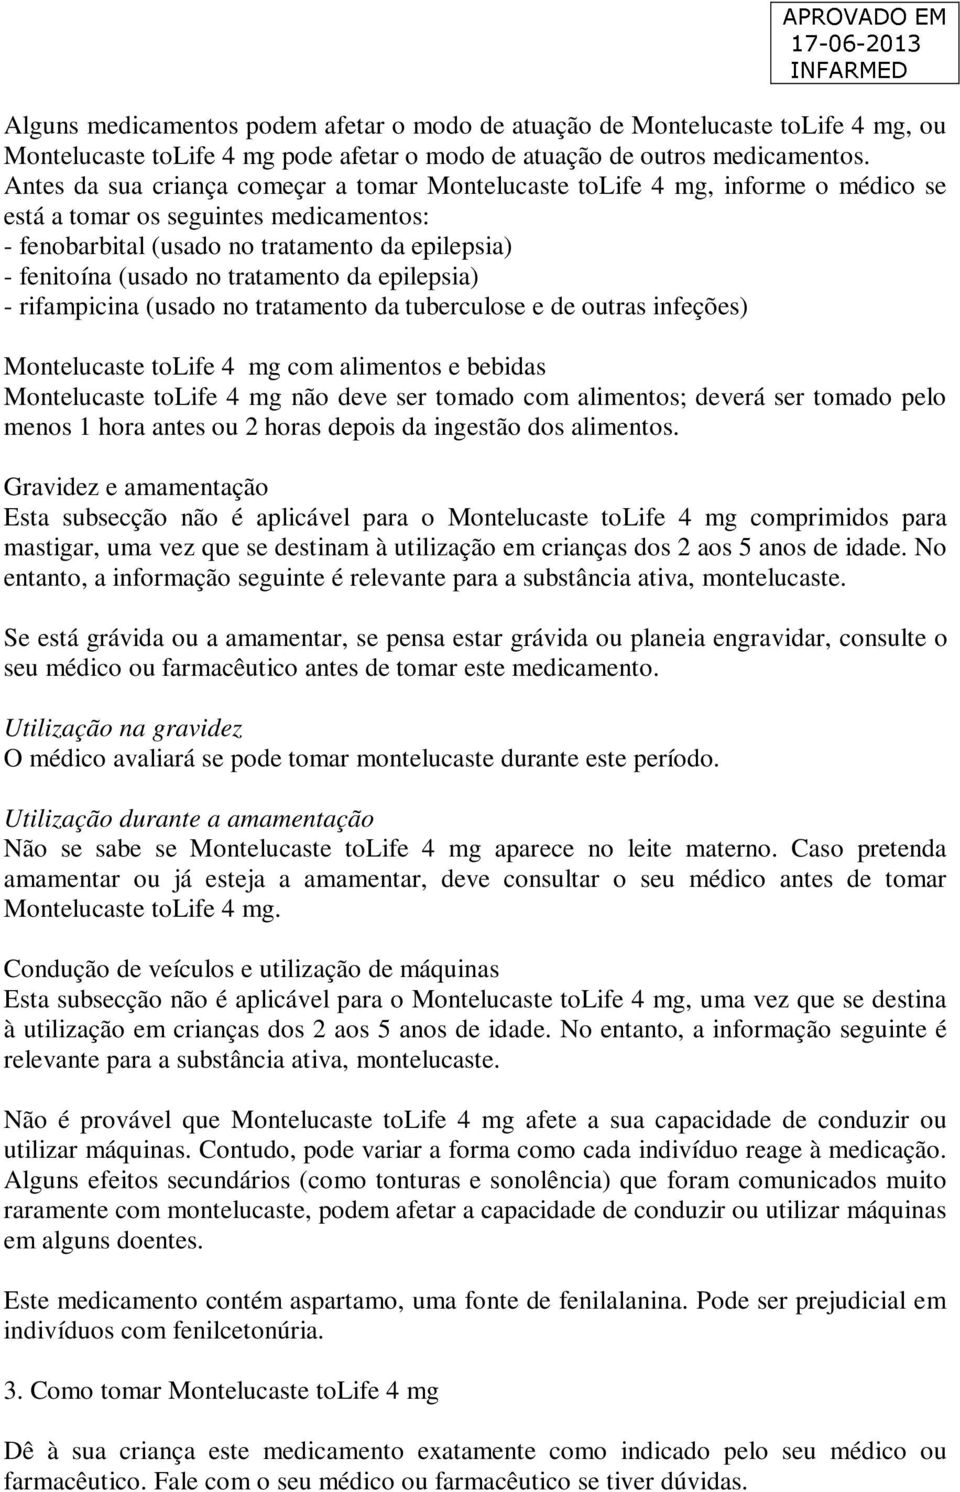 tratamento da epilepsia) - rifampicina (usado no tratamento da tuberculose e de outras infeções) Montelucaste tolife 4 mg com alimentos e bebidas Montelucaste tolife 4 mg não deve ser tomado com